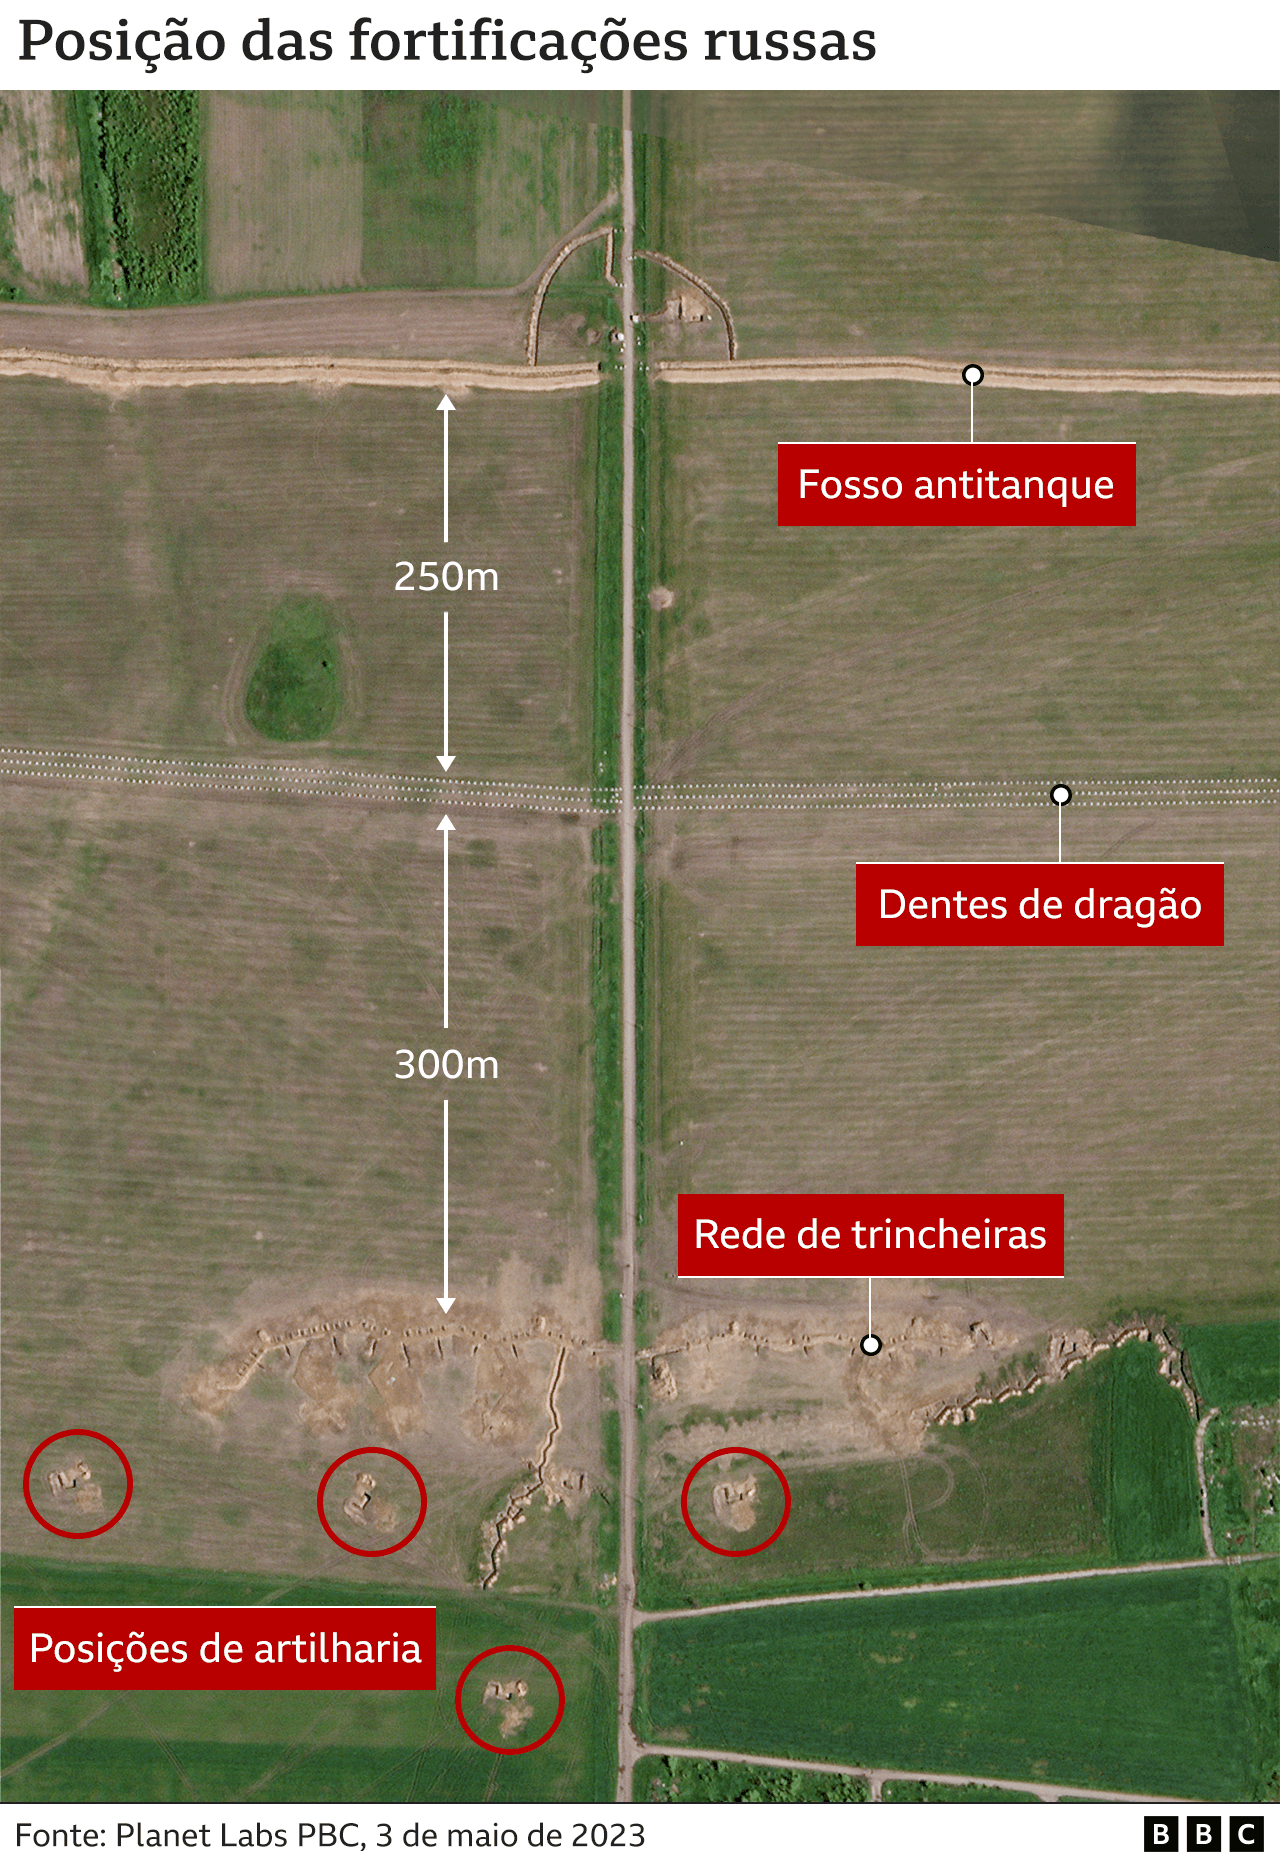 Imagem mostra posição das fortificações russas